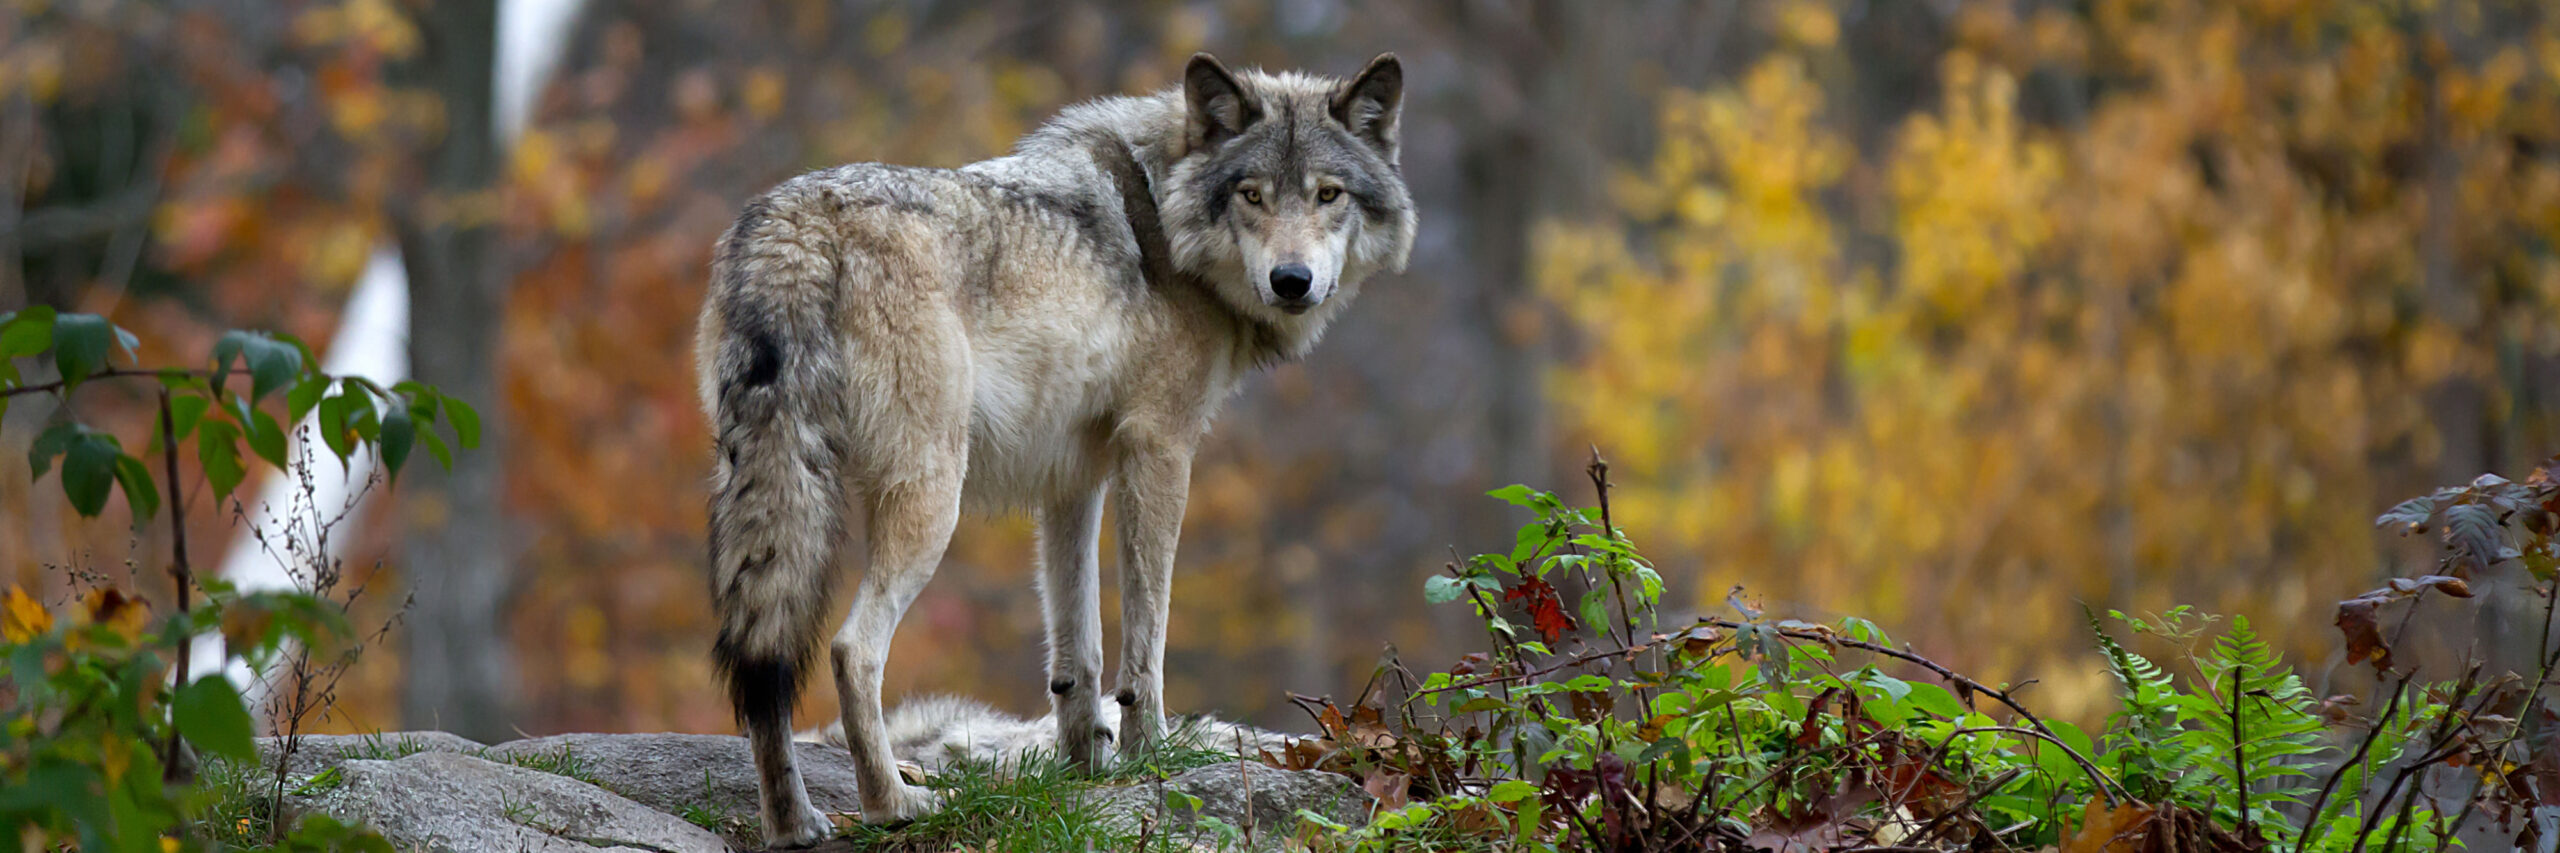 common-wolf